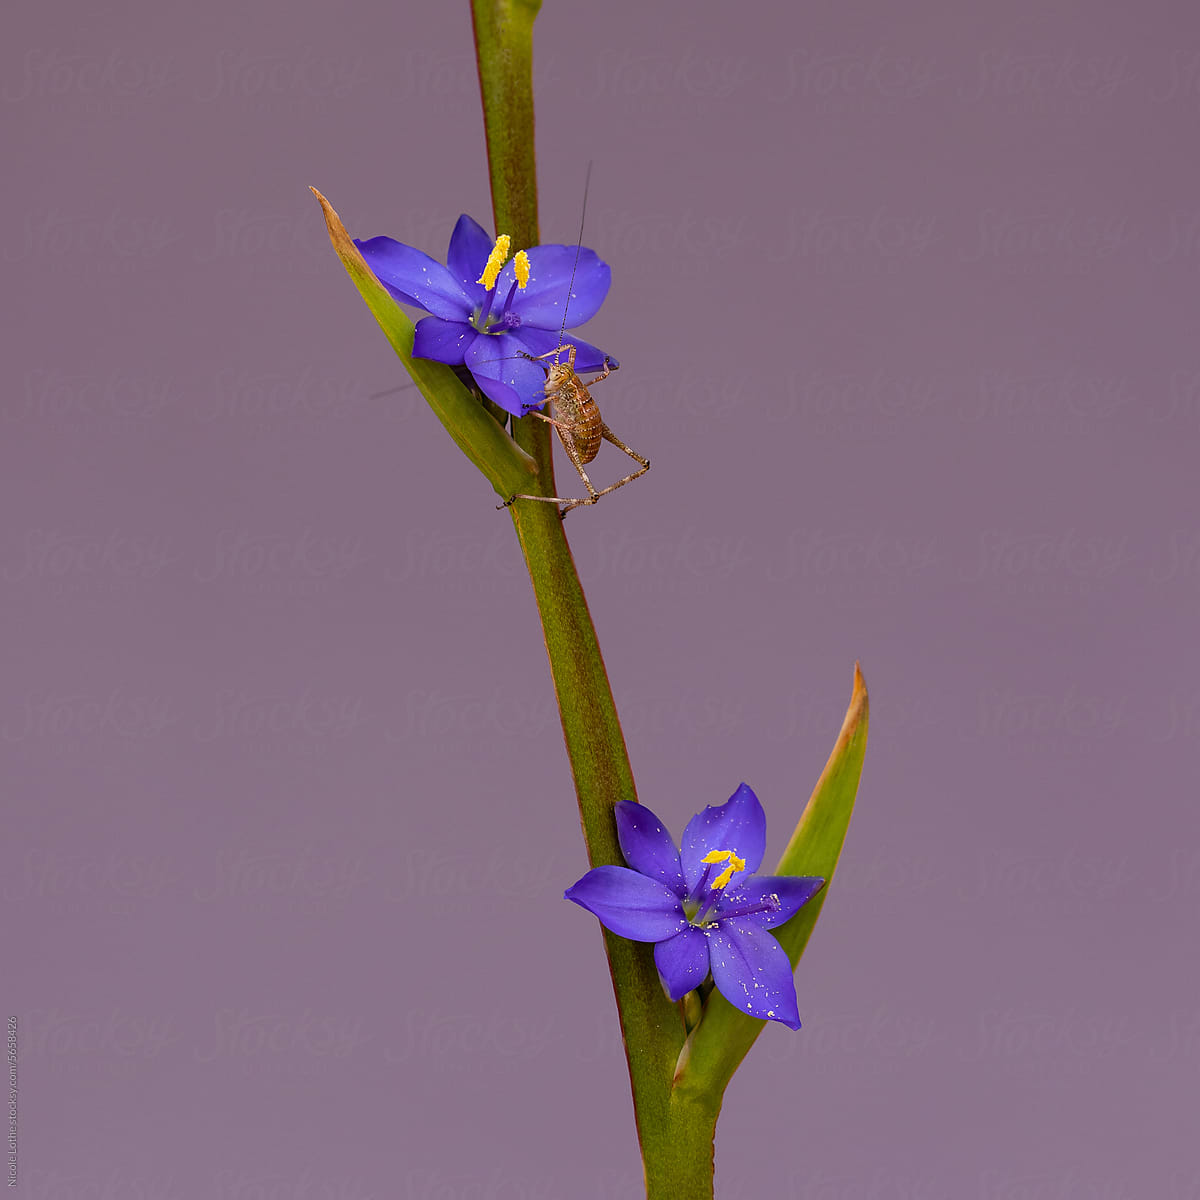 Brown grasshopper climbing up to blue flower